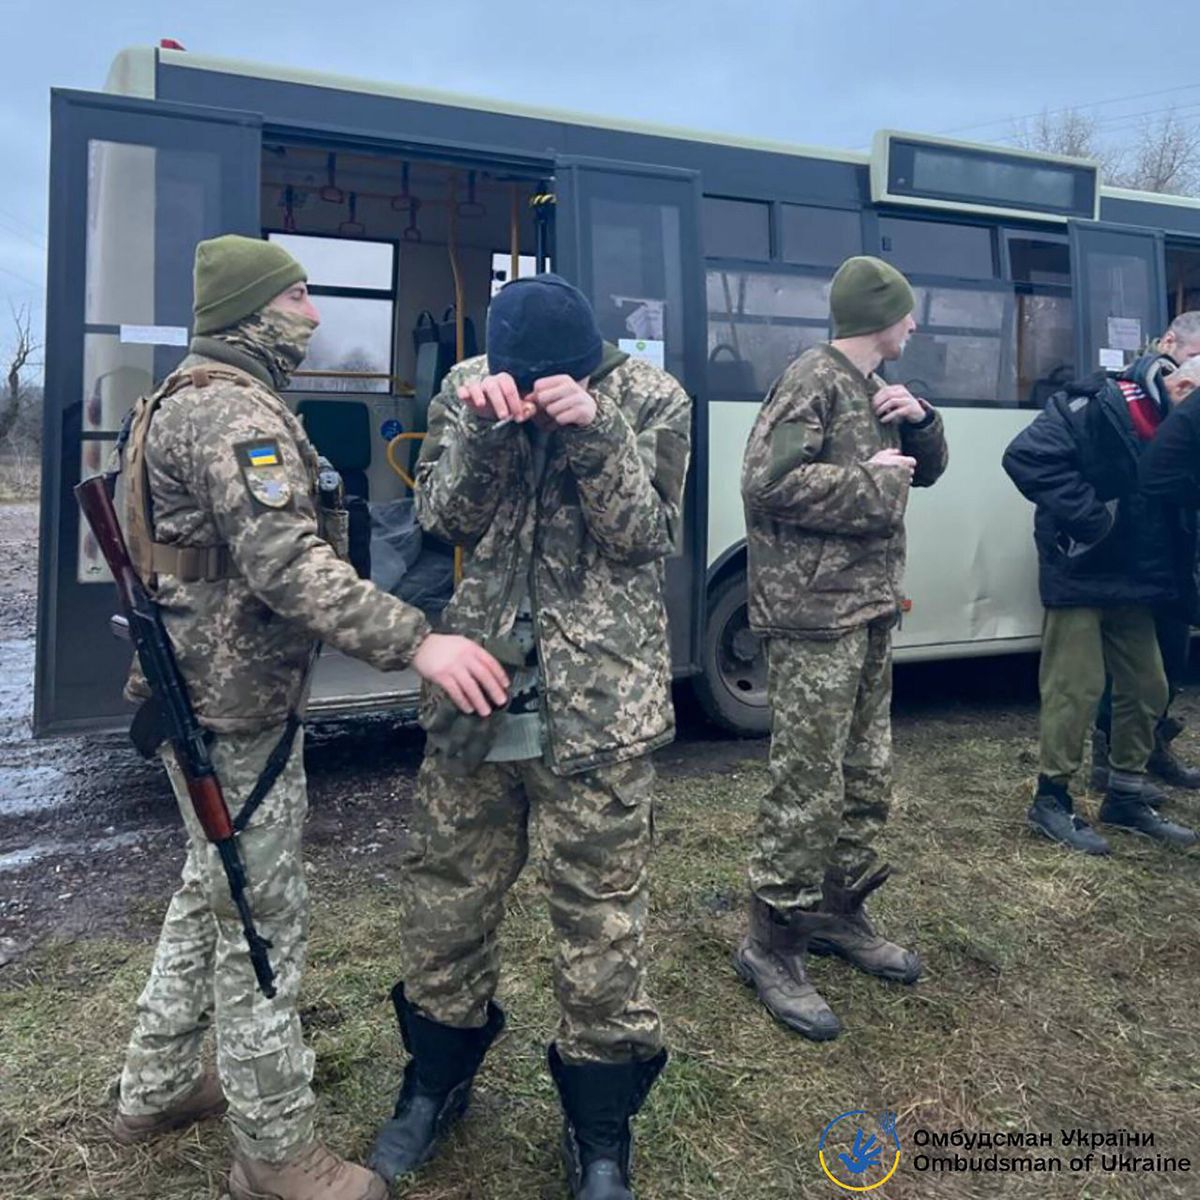 Ukraińscy jeńcy wojenni, którzy zostali schwytani przez armię rosyjską, wrócili do kraju